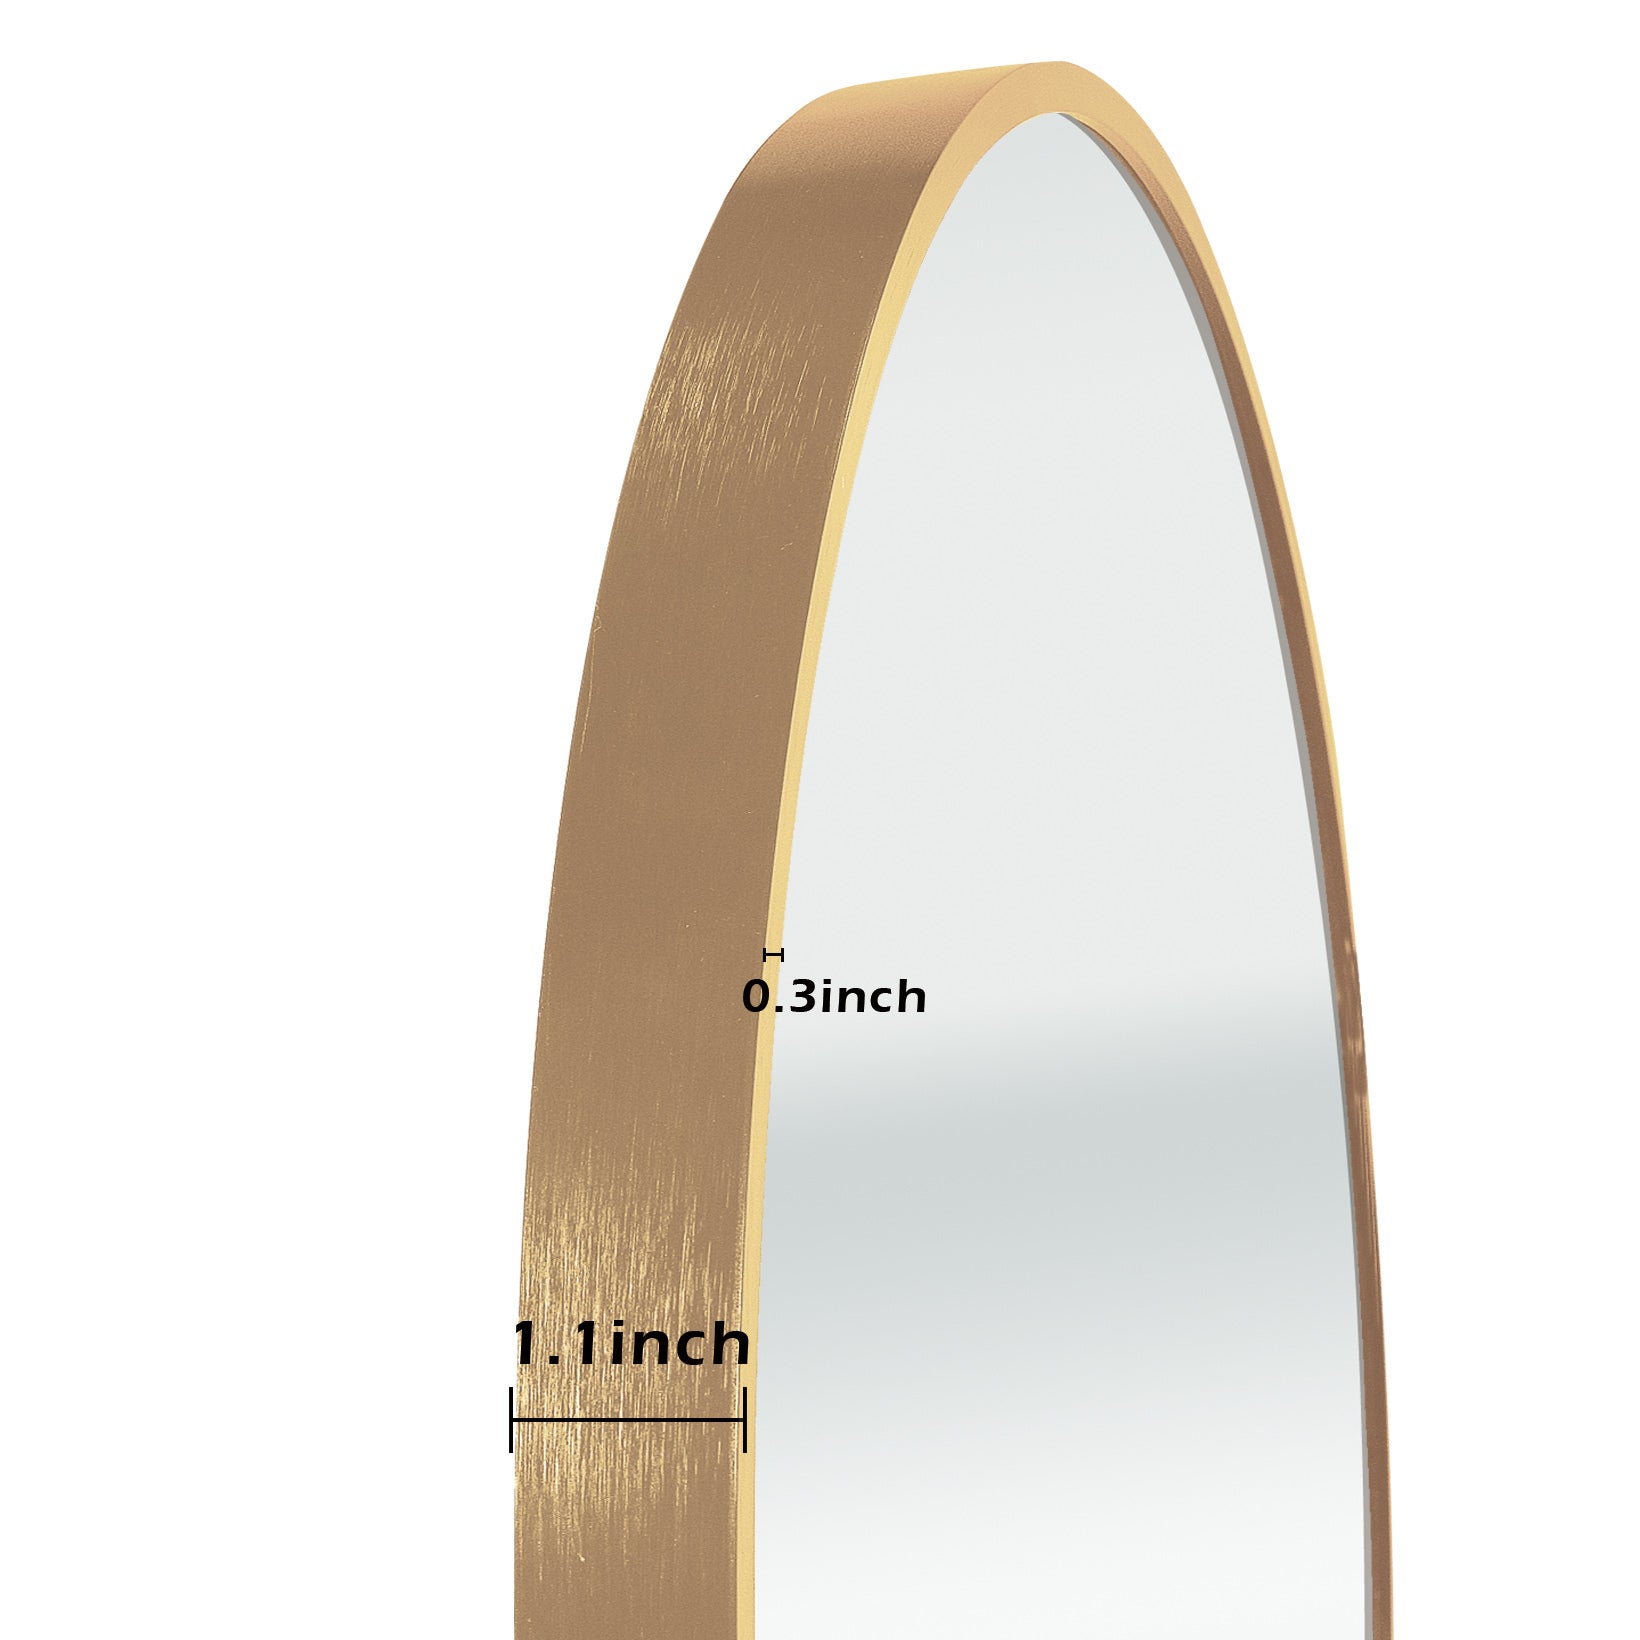 Gold 24 Inch Metal Round Bathroom Mirror gold-classic-mdf-aluminium alloy